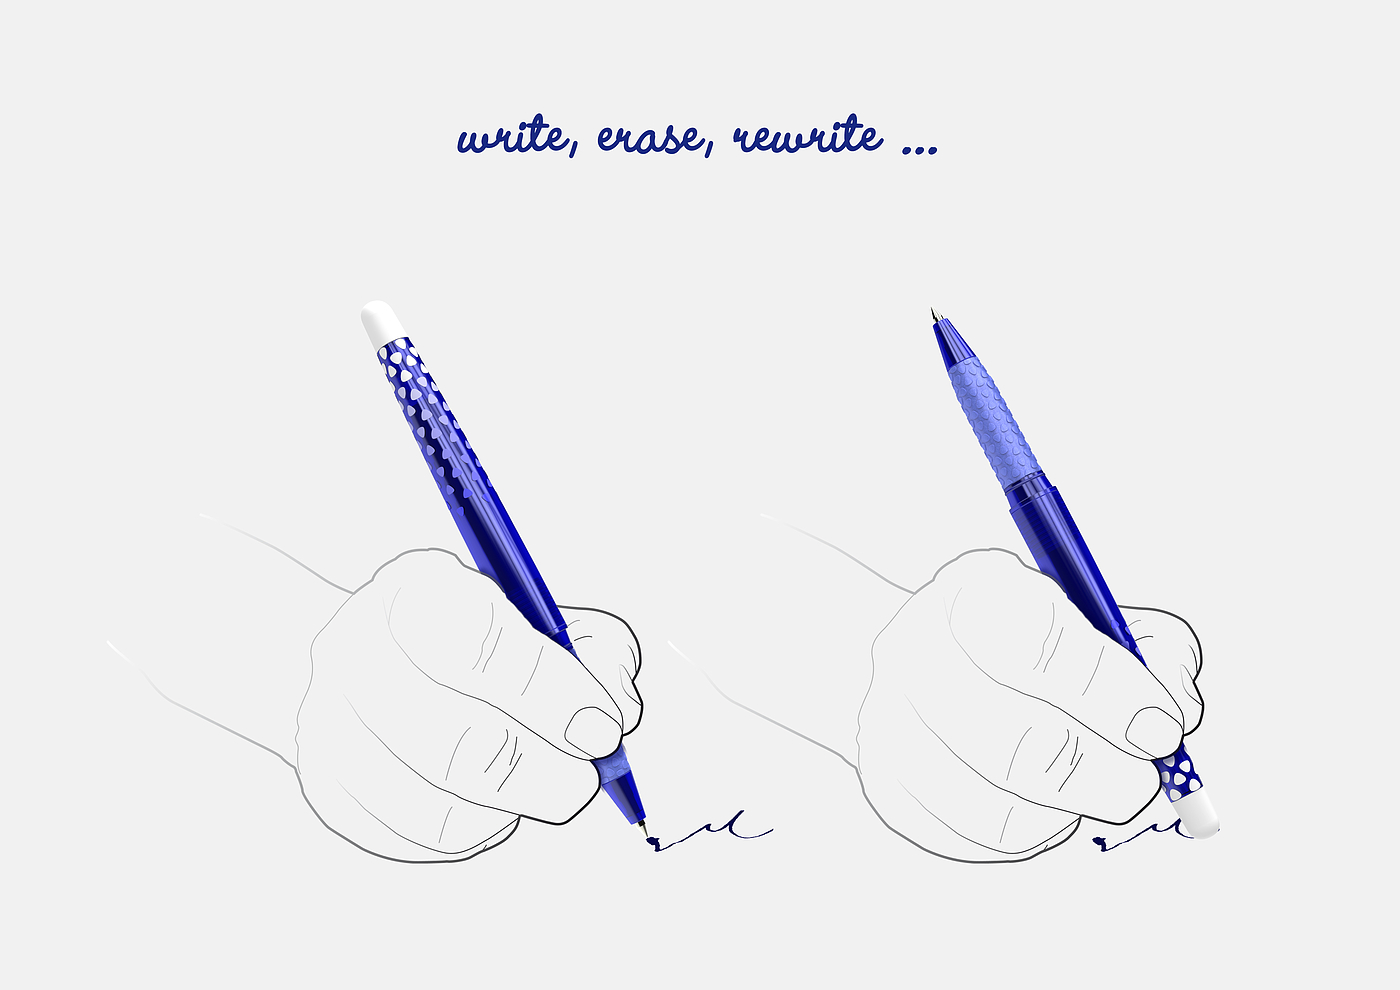 笔，钢笔，圆珠笔，文具，分享，